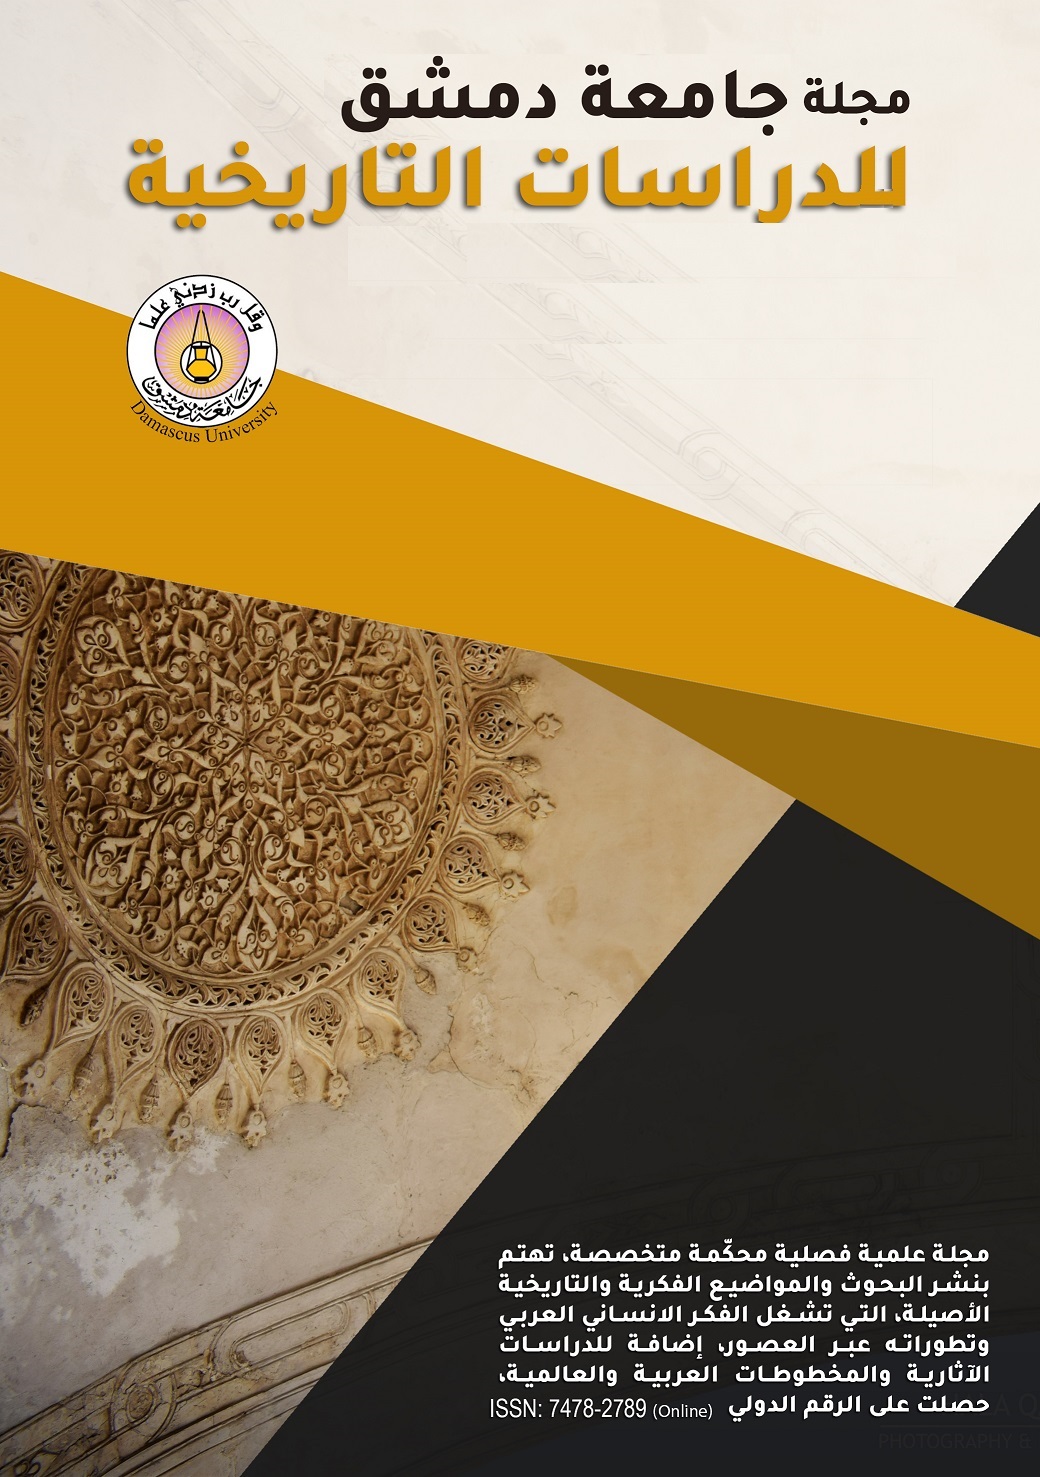 					معاينة مجلد 139 عدد 1 (2019): مجلة جامعة دمشق للدراسات التاريخية
				